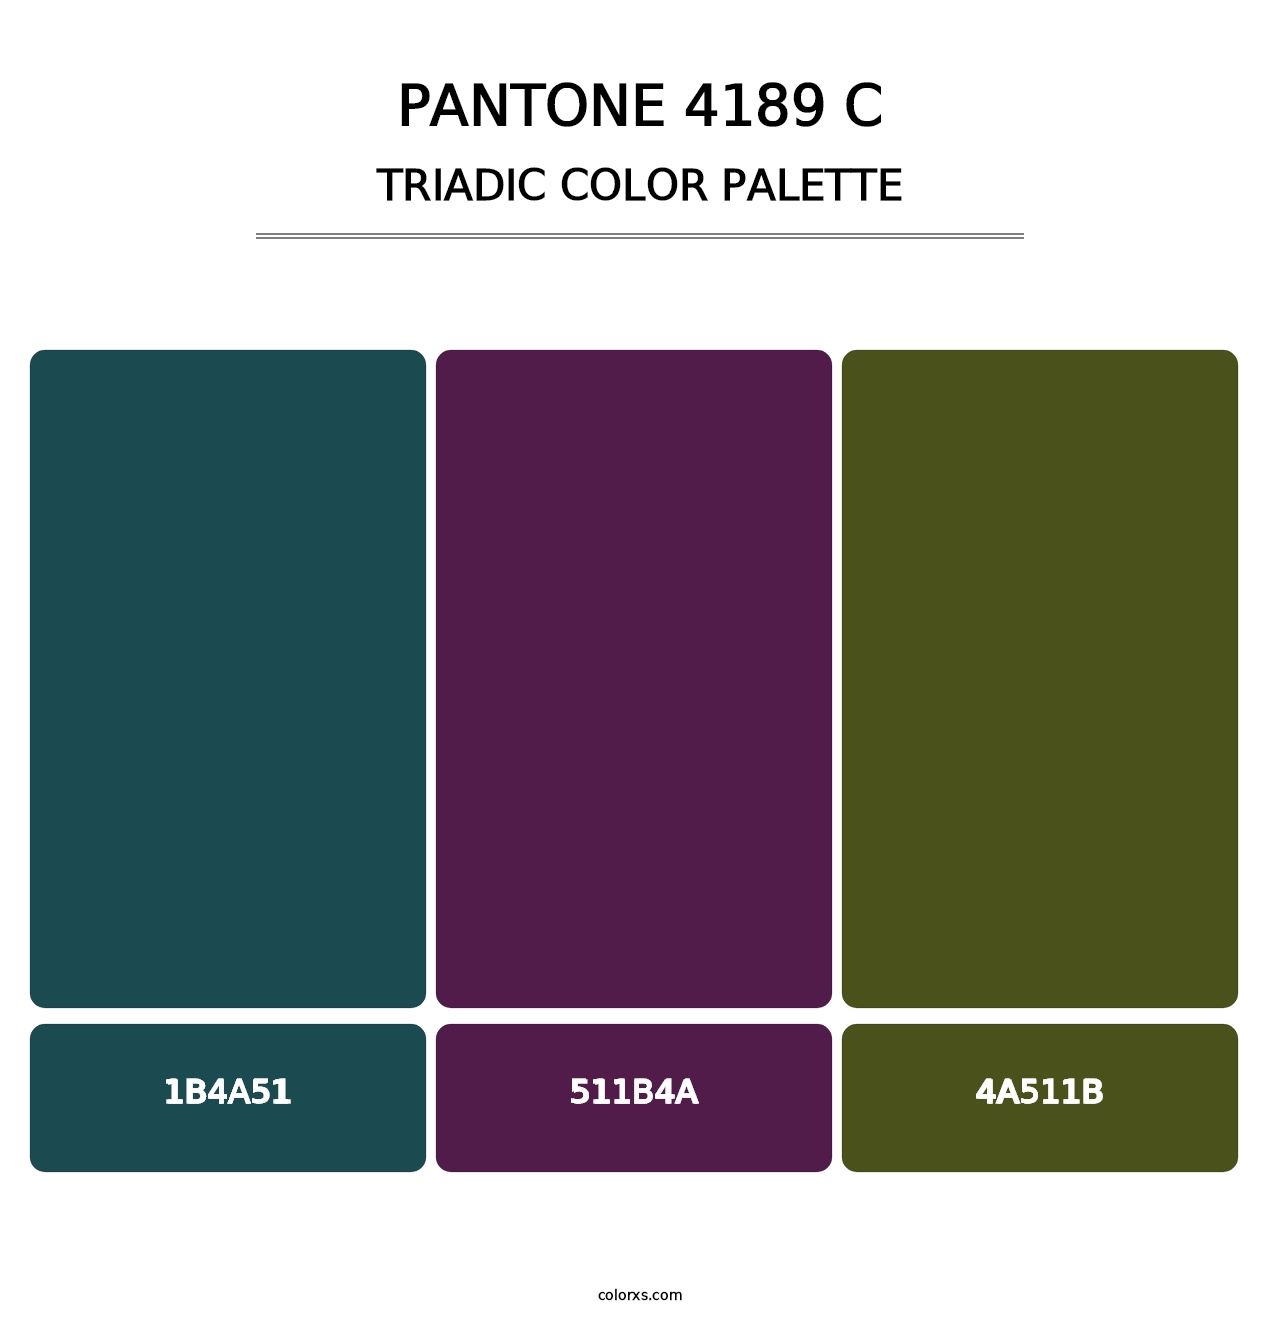 PANTONE 4189 C - Triadic Color Palette